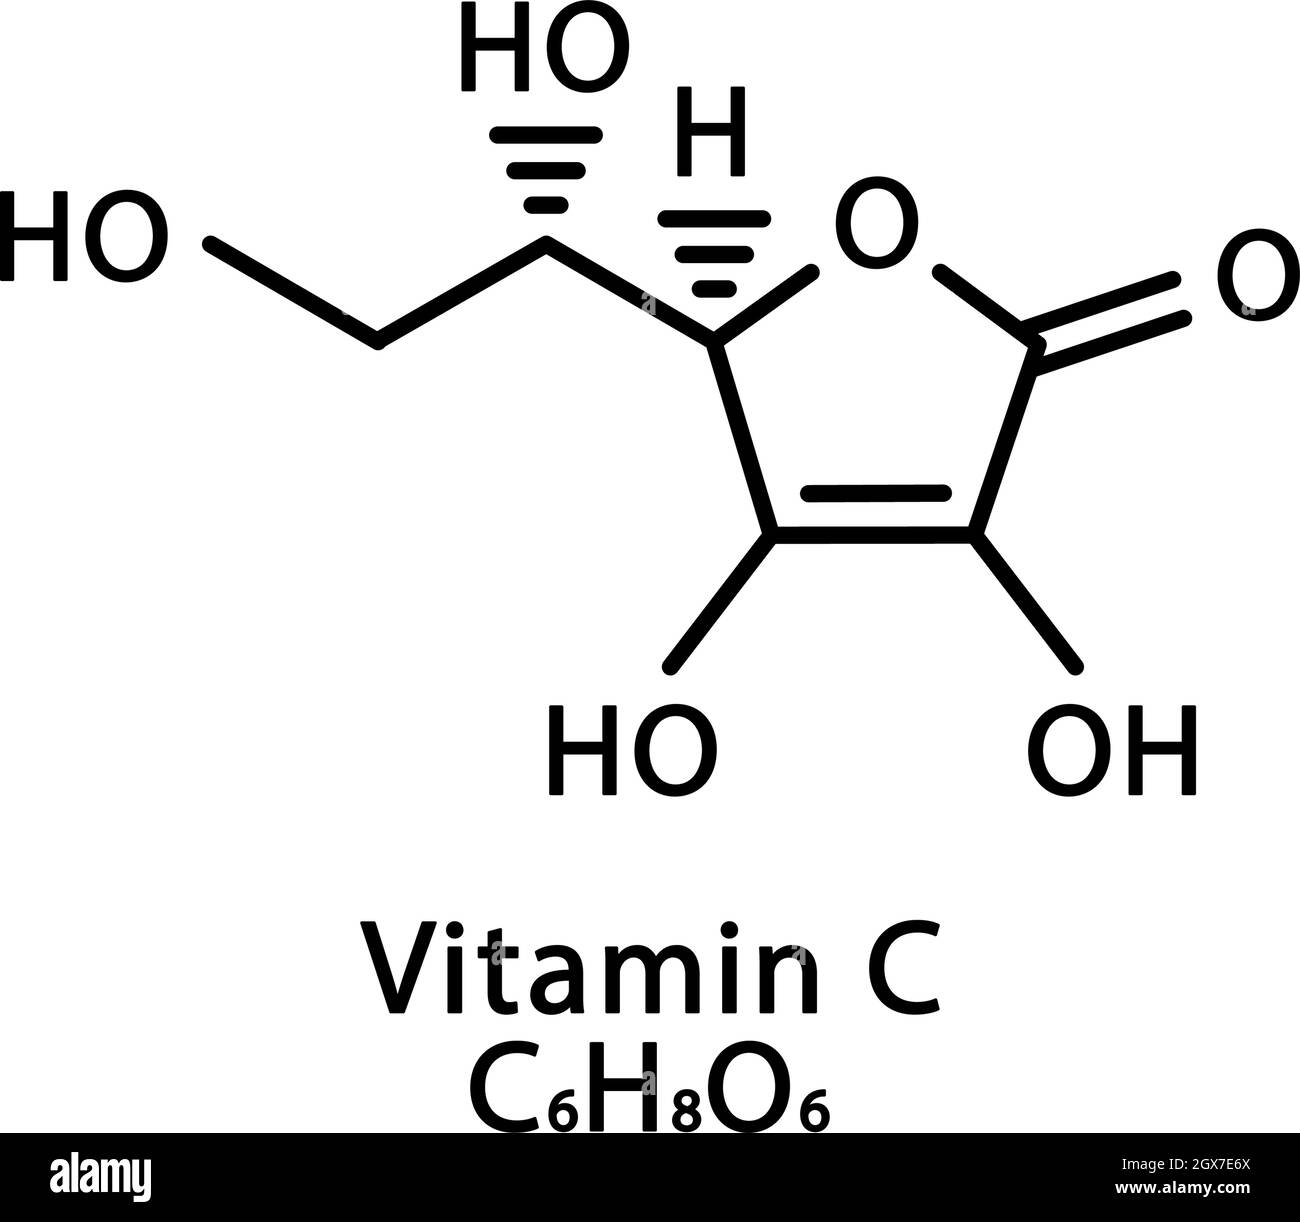 Vitamin C Ascorbic acid molecular structure. Vitamin C Ascorbic acid skeletal chemical formula. Chemical molecular formulas Stock Vector Image & Art - Alamy